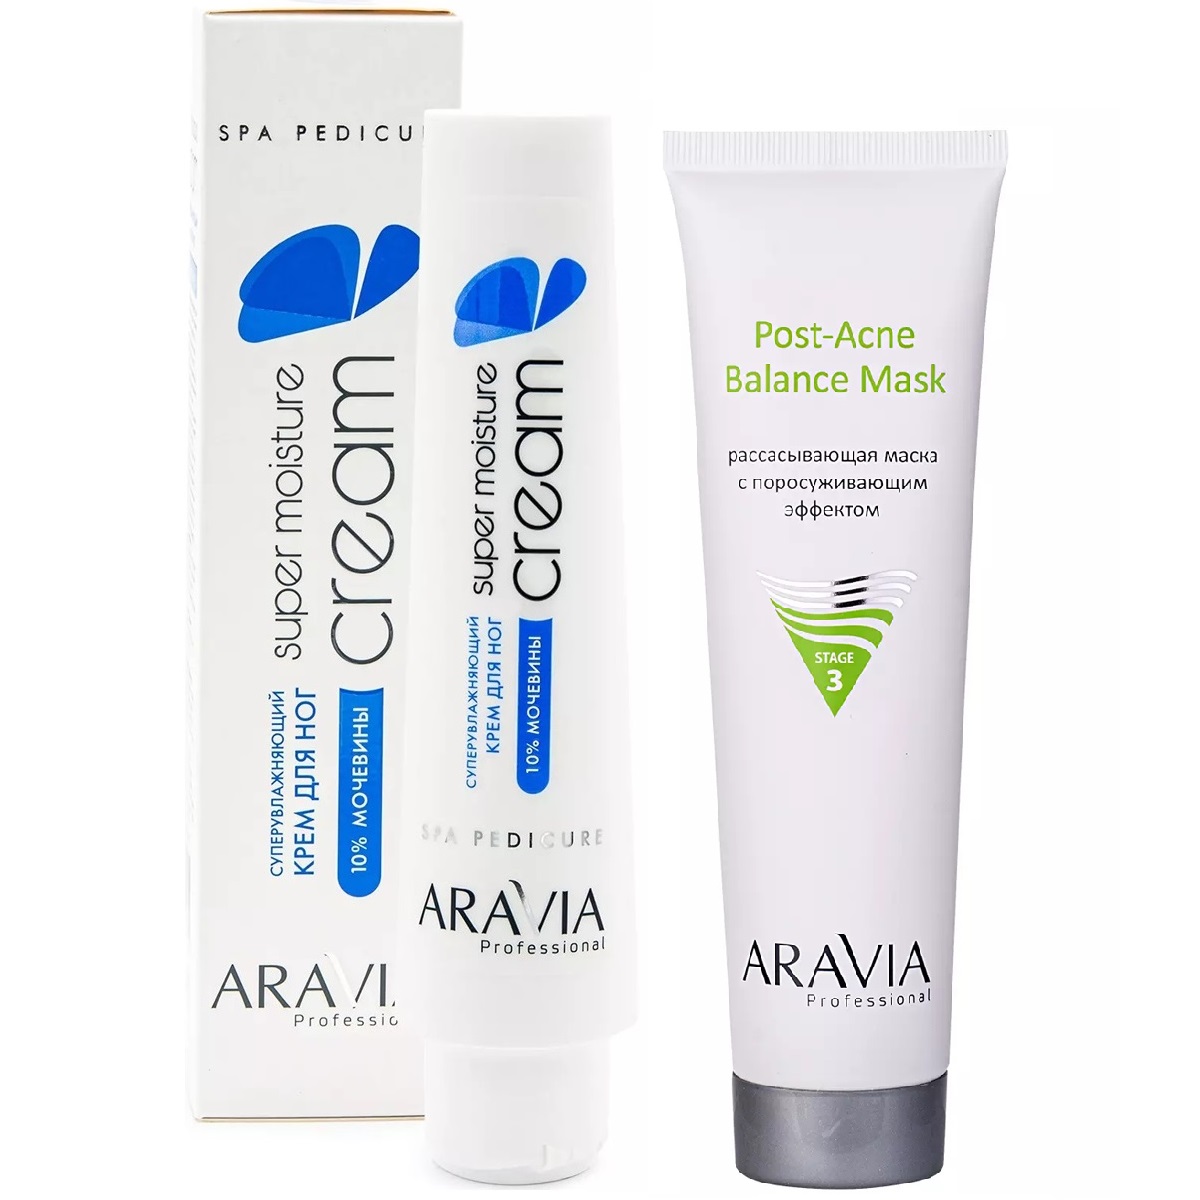 цена Aravia Professional Набор бестселлеров: маска, 100 мл + суперувлажняющий крем для ног, 100 мл (Aravia Professional, Уход за лицом)